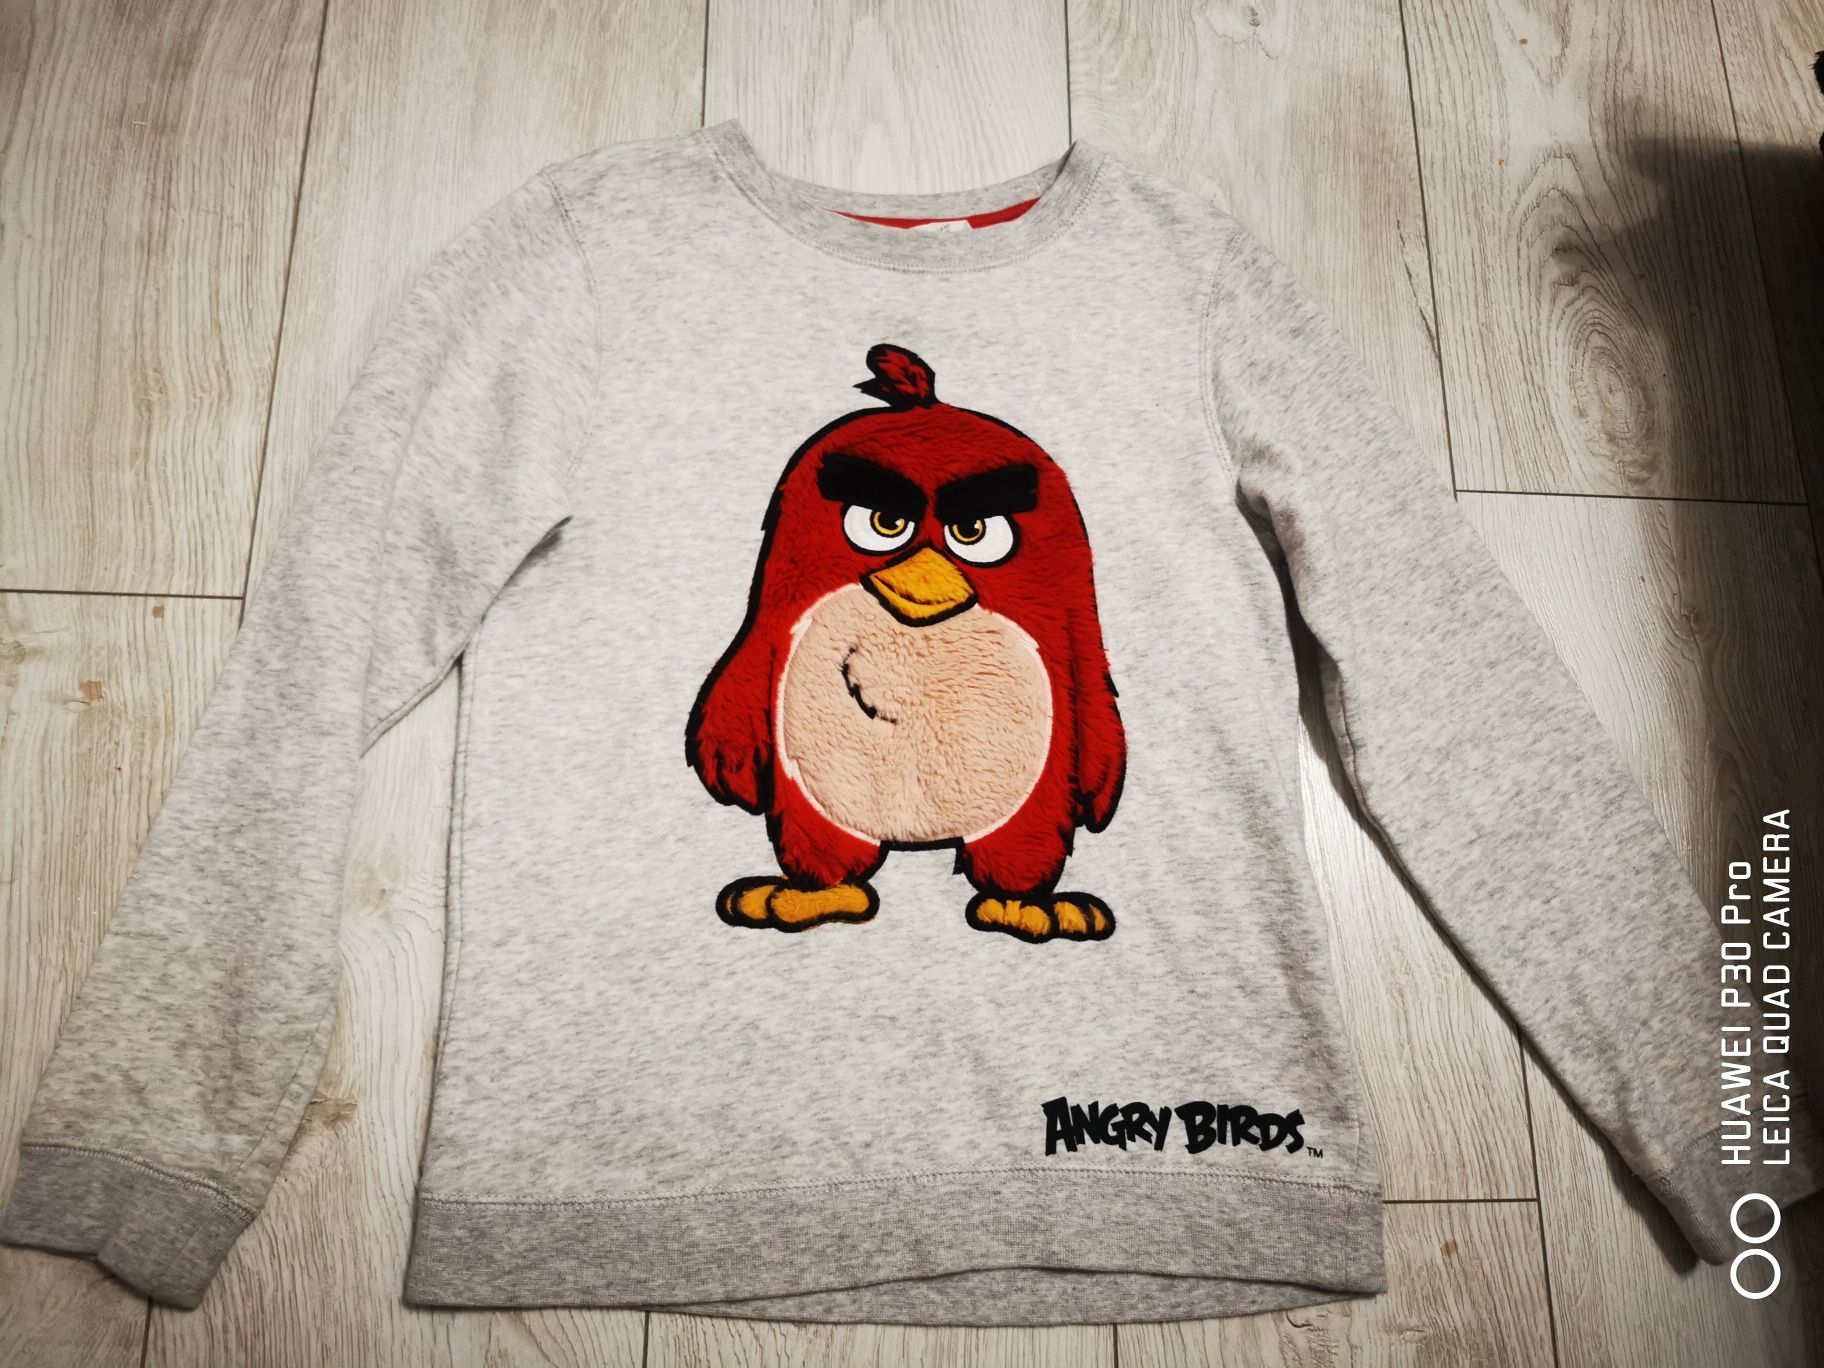 Bluza H&M Angry Birds 8-10 ani ca noua